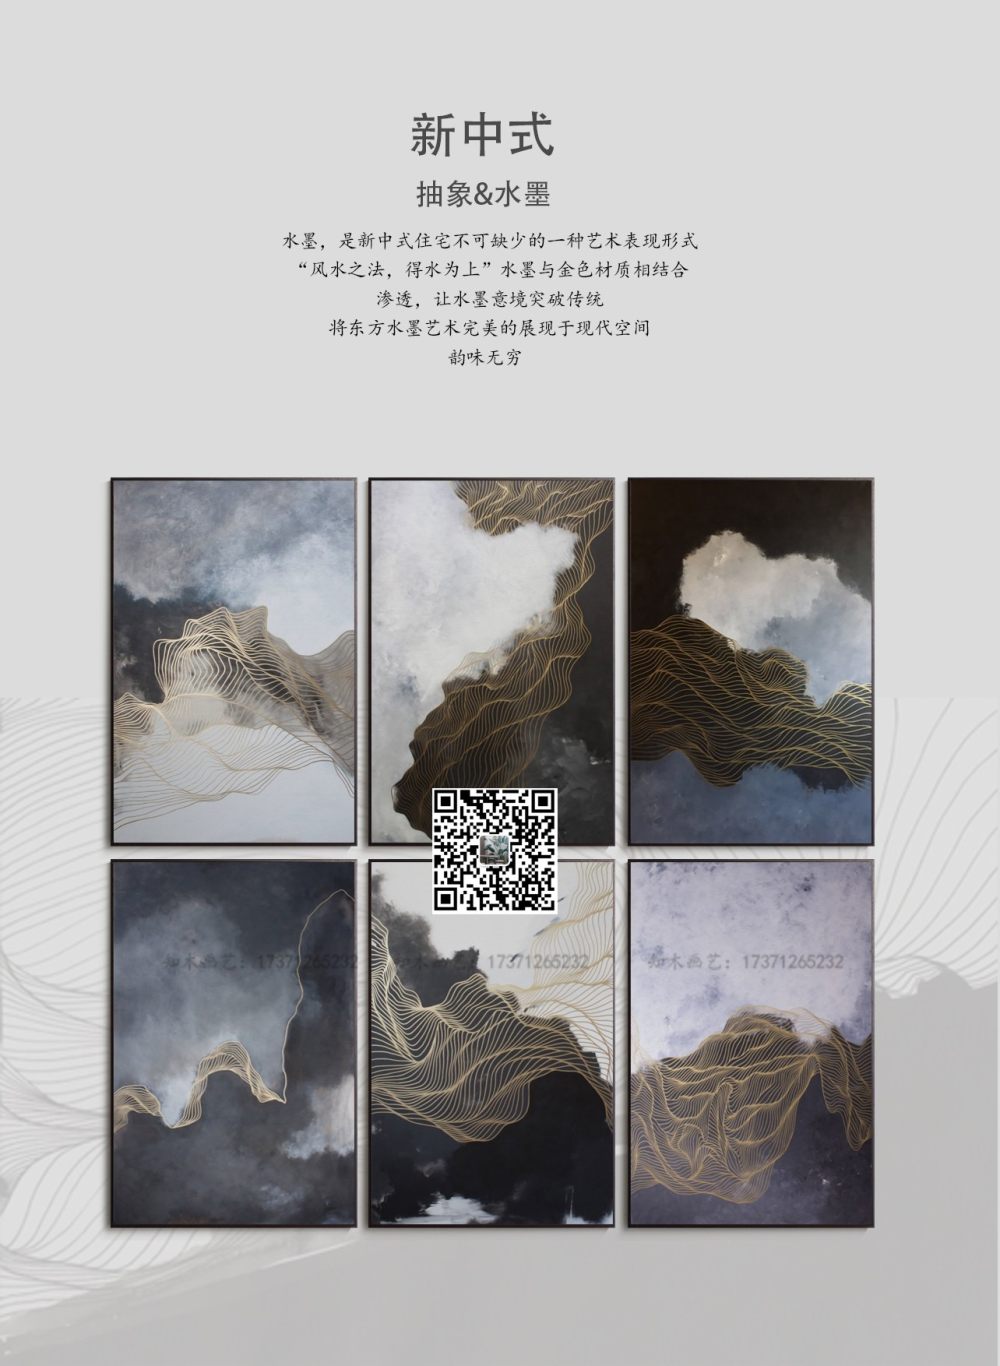 新中式 意境抽象金属线条 云雾山水装饰画素材高清画_水印-画册版本2-5.jpg